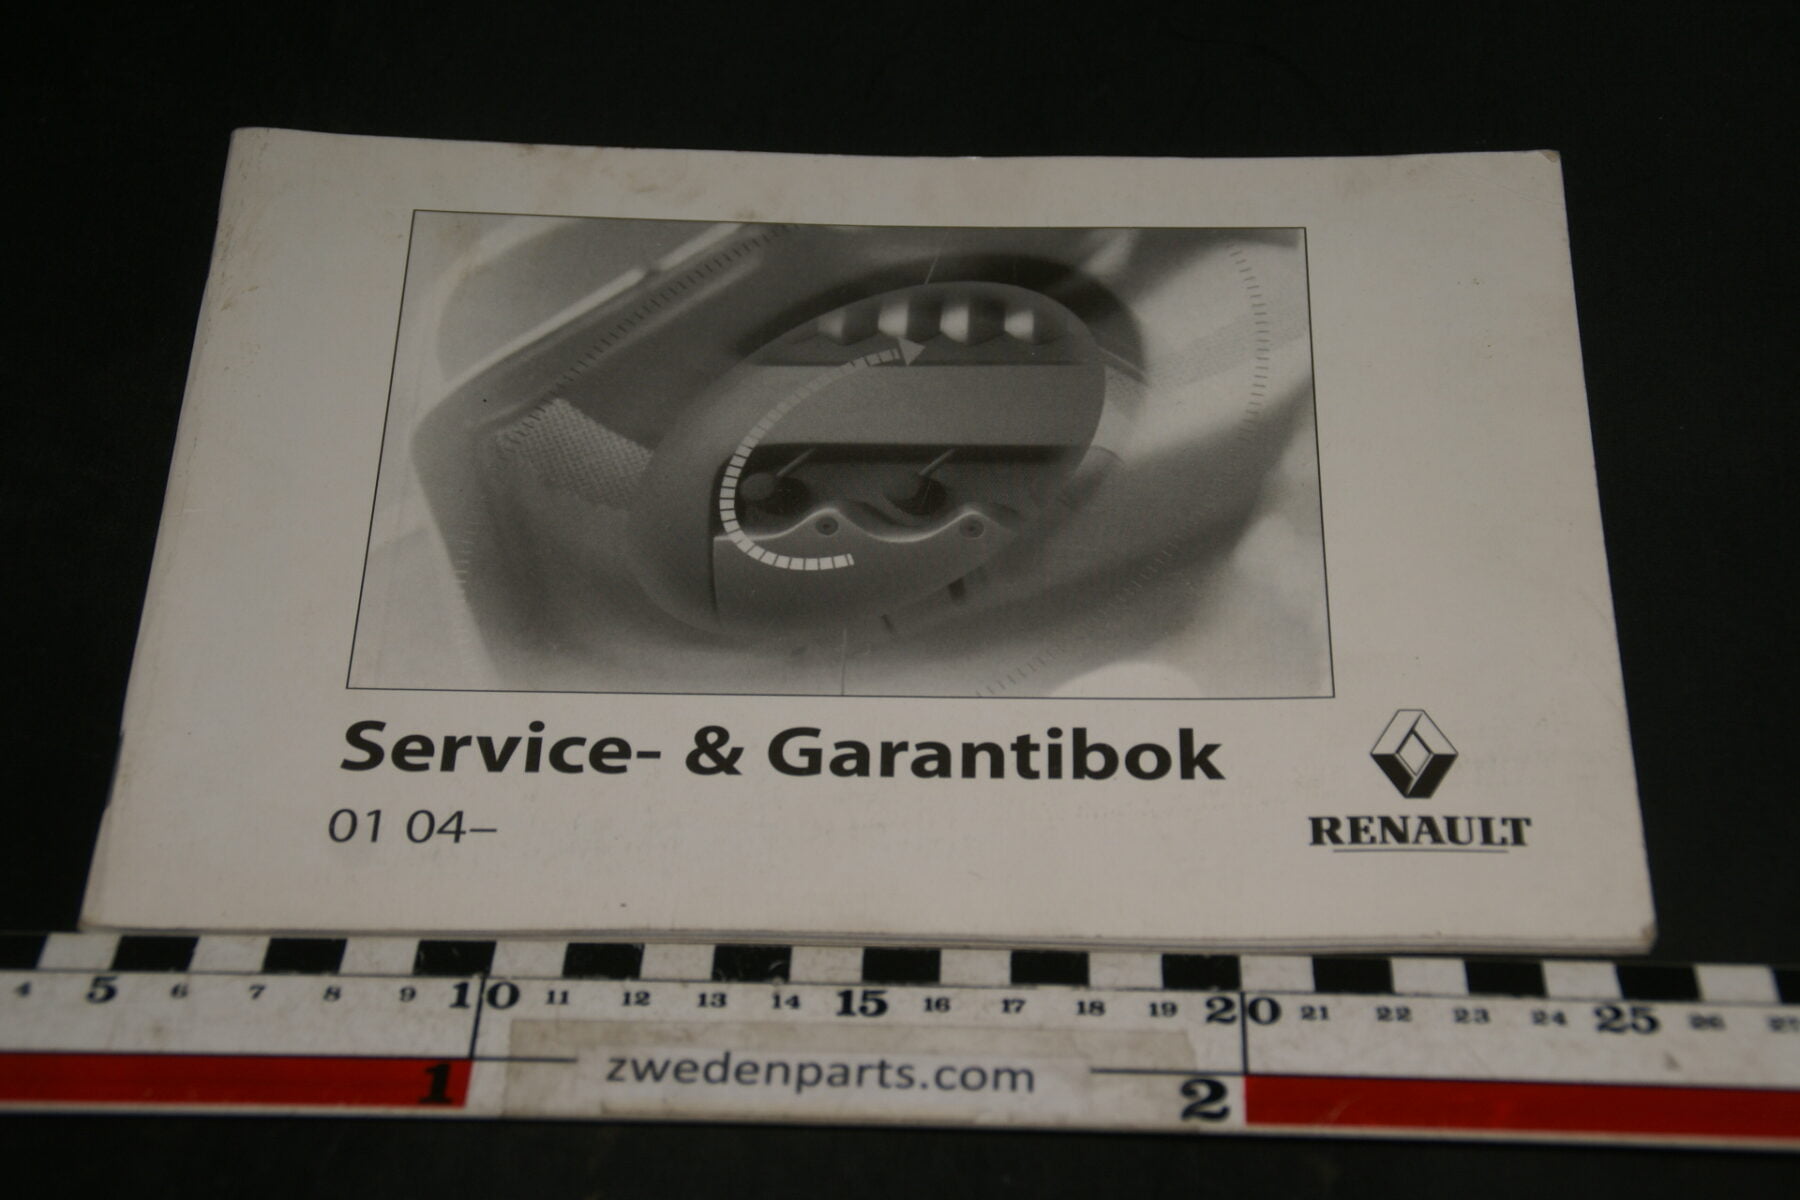 DSC04920 2004 Renault Service sn Gaerantieboek